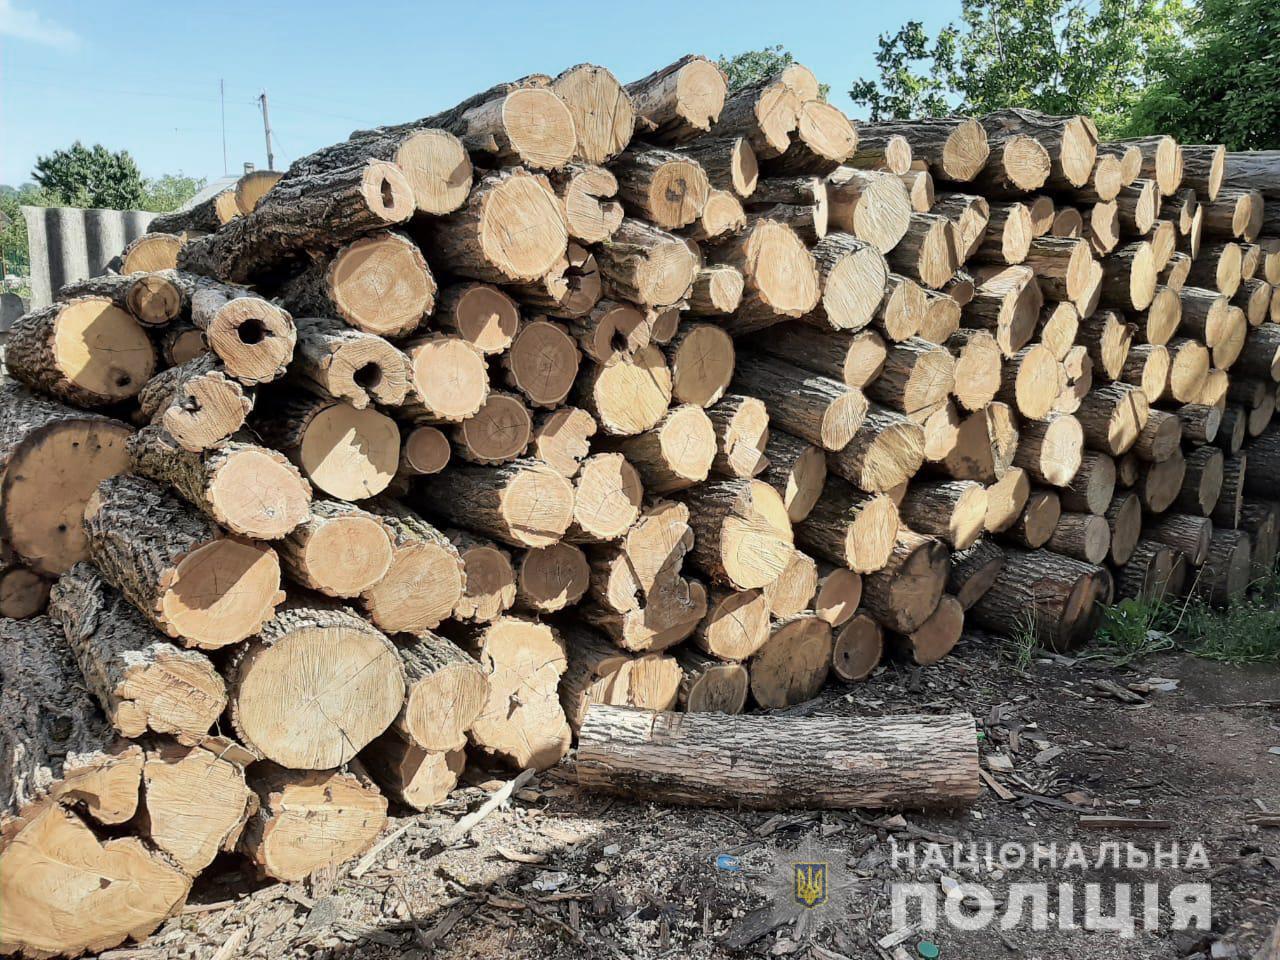 На Кіровоградщині затримали групу осіб за вирубку лісосмуг. ФОТО